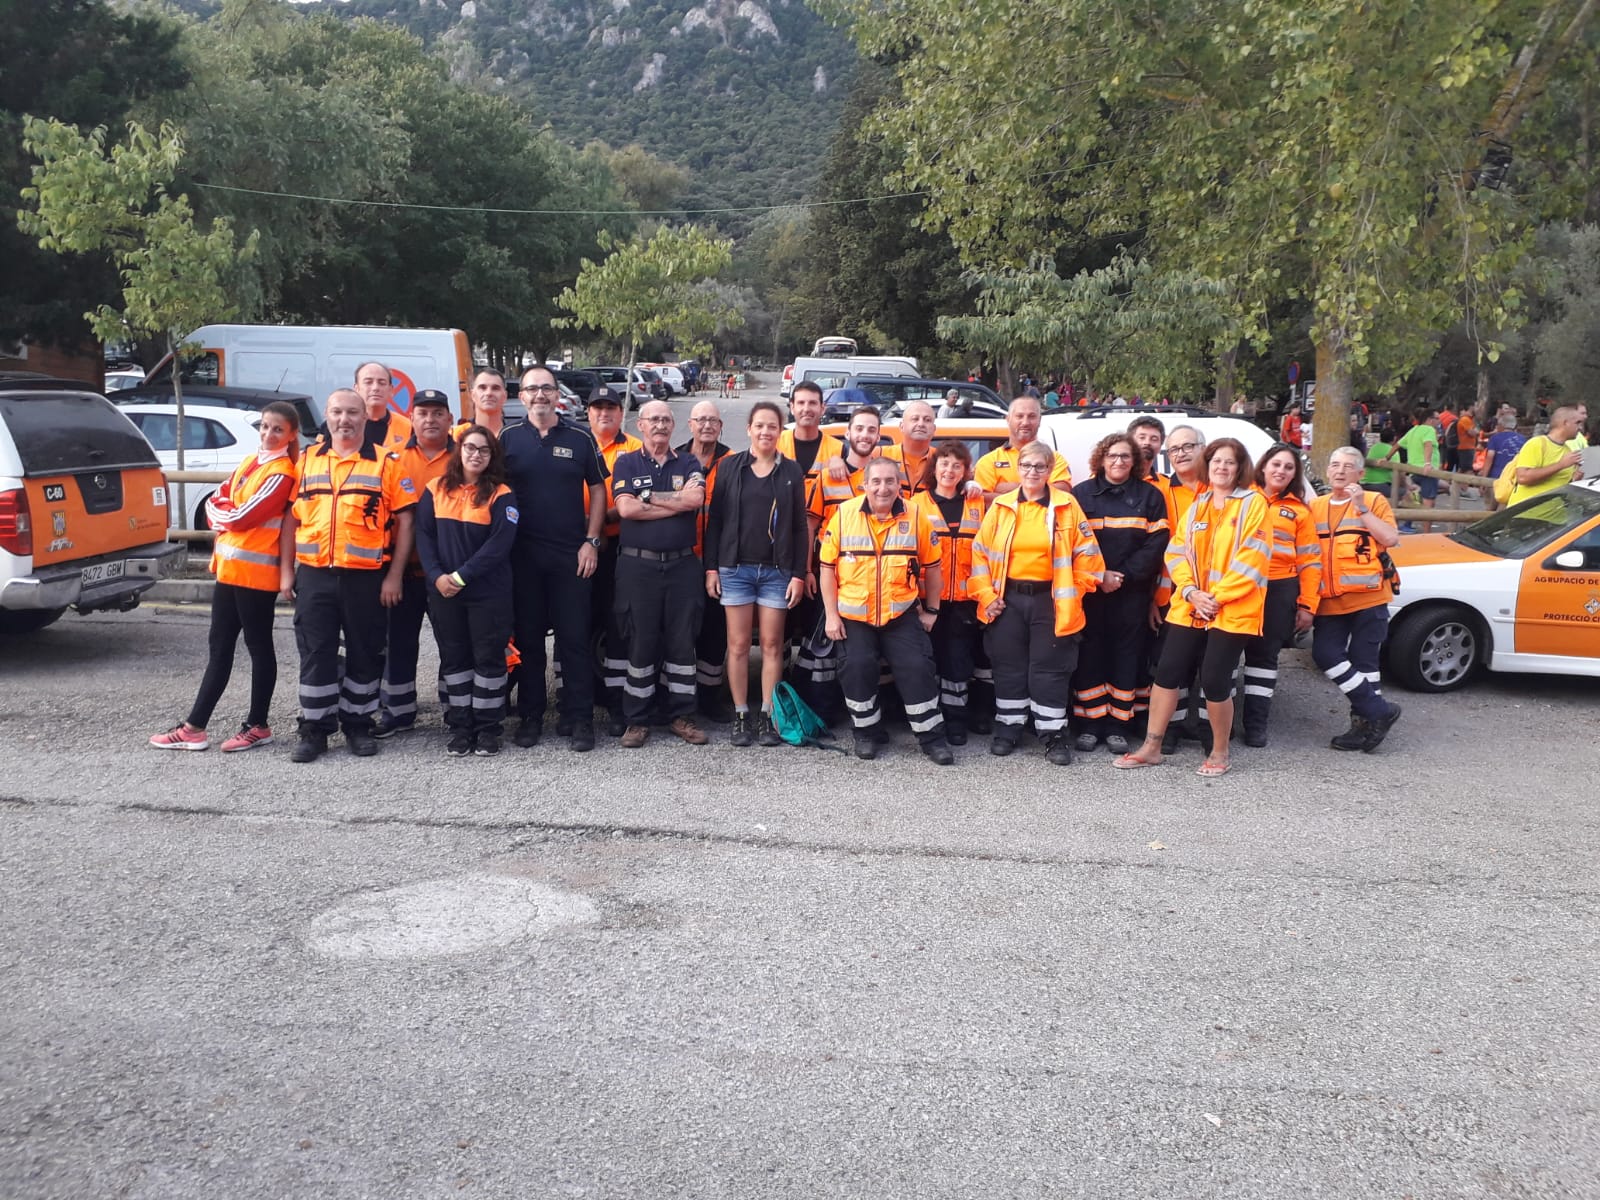 Protección Civil de las Illes Balears - La Dirección General de Emergencias  e Interior coordina cerca de noventa voluntarios de Protección Civil en la  XXXIX Subida a Lluc a pie desde la